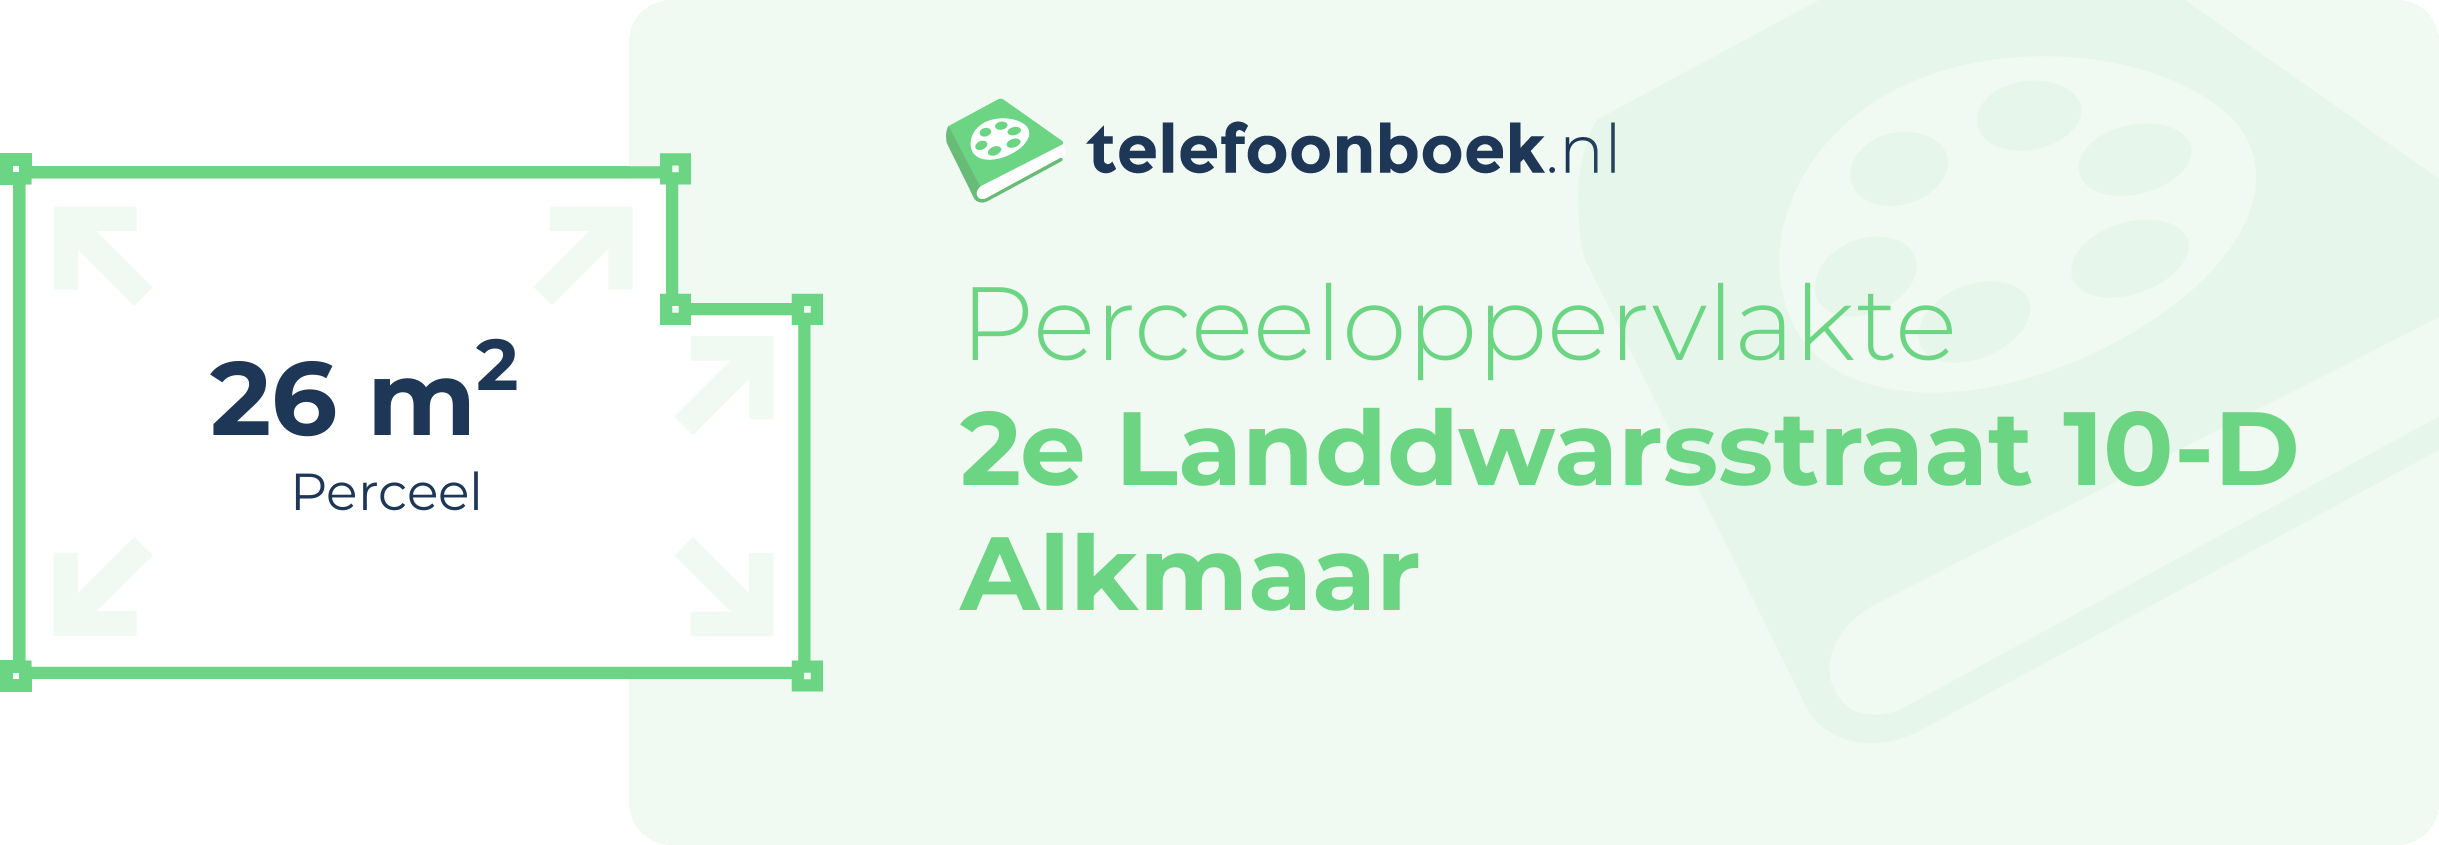 Perceeloppervlakte 2e Landdwarsstraat 10-D Alkmaar